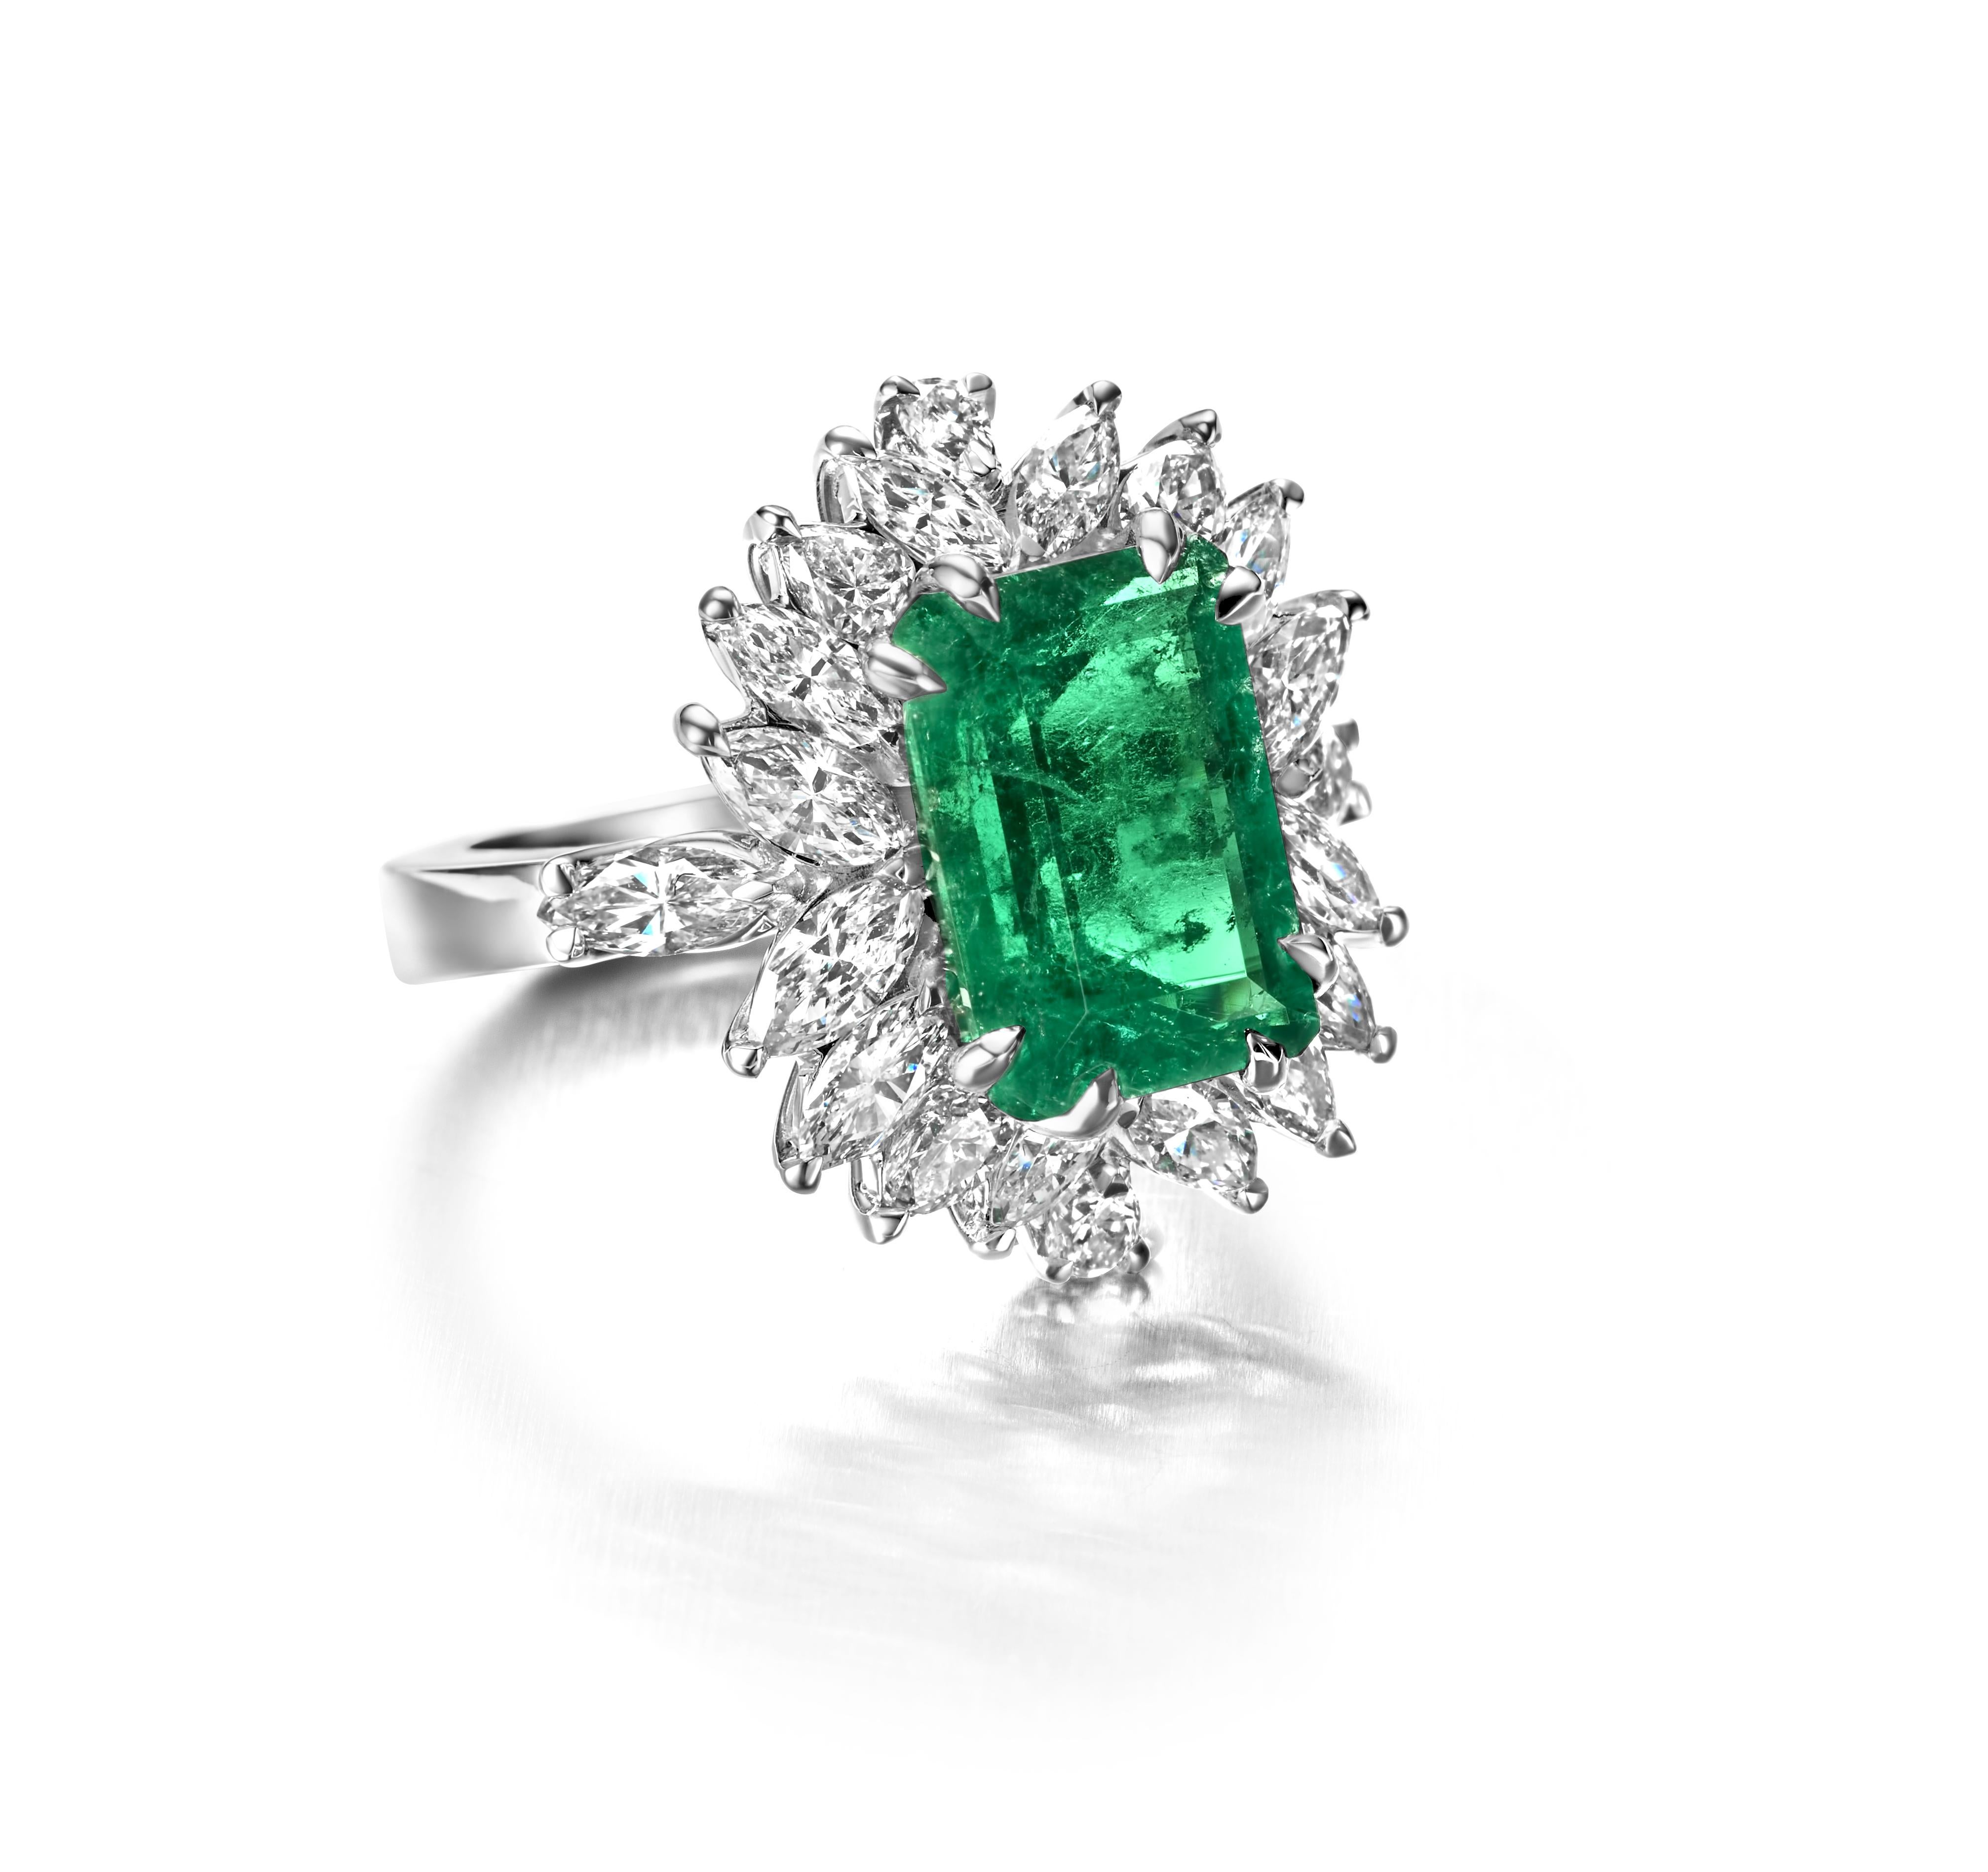 Schöne 18kt Handmade Weißgold Ring mit 4,36 Ct Kolumbien Smaragd Minor und Diamanten.

Smaragd ist einer der am schwierigsten zu fotografierenden Steine, daher ist der Smaragd eigentlich viel schöner als abgebildet.....

Smaragd: Natürlicher grüner